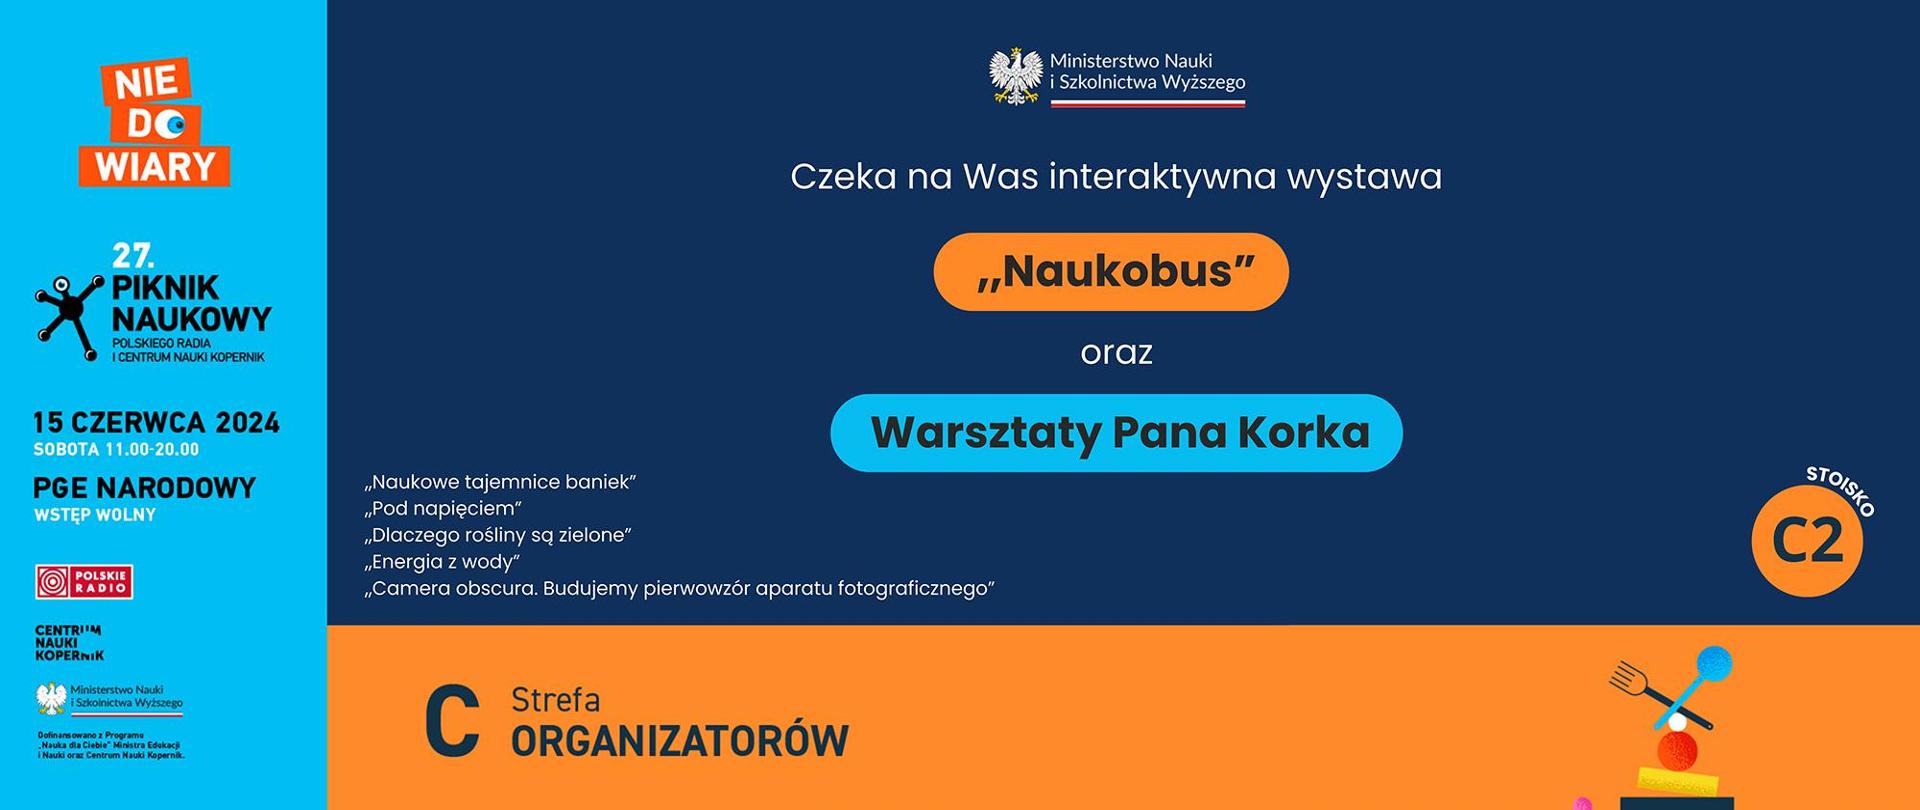 Grafika - na granatowym i pomarańczowym tle napis Czeka na was interaktywna wystawa Naukobus oraz Warsztaty Pana Korka.